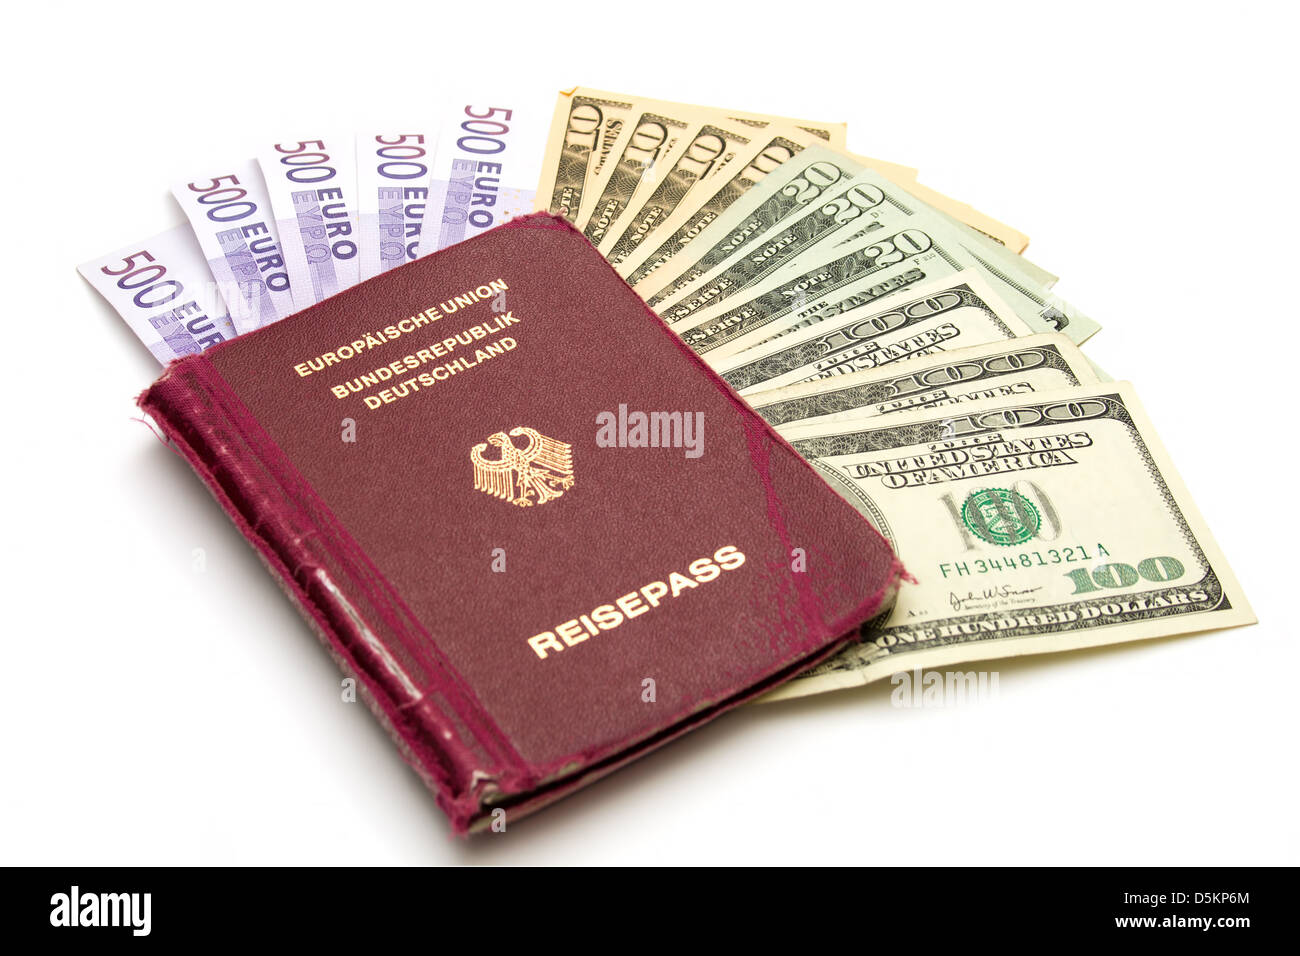 Unione Europea Passaporto con denaro su sfondo bianco Foto Stock